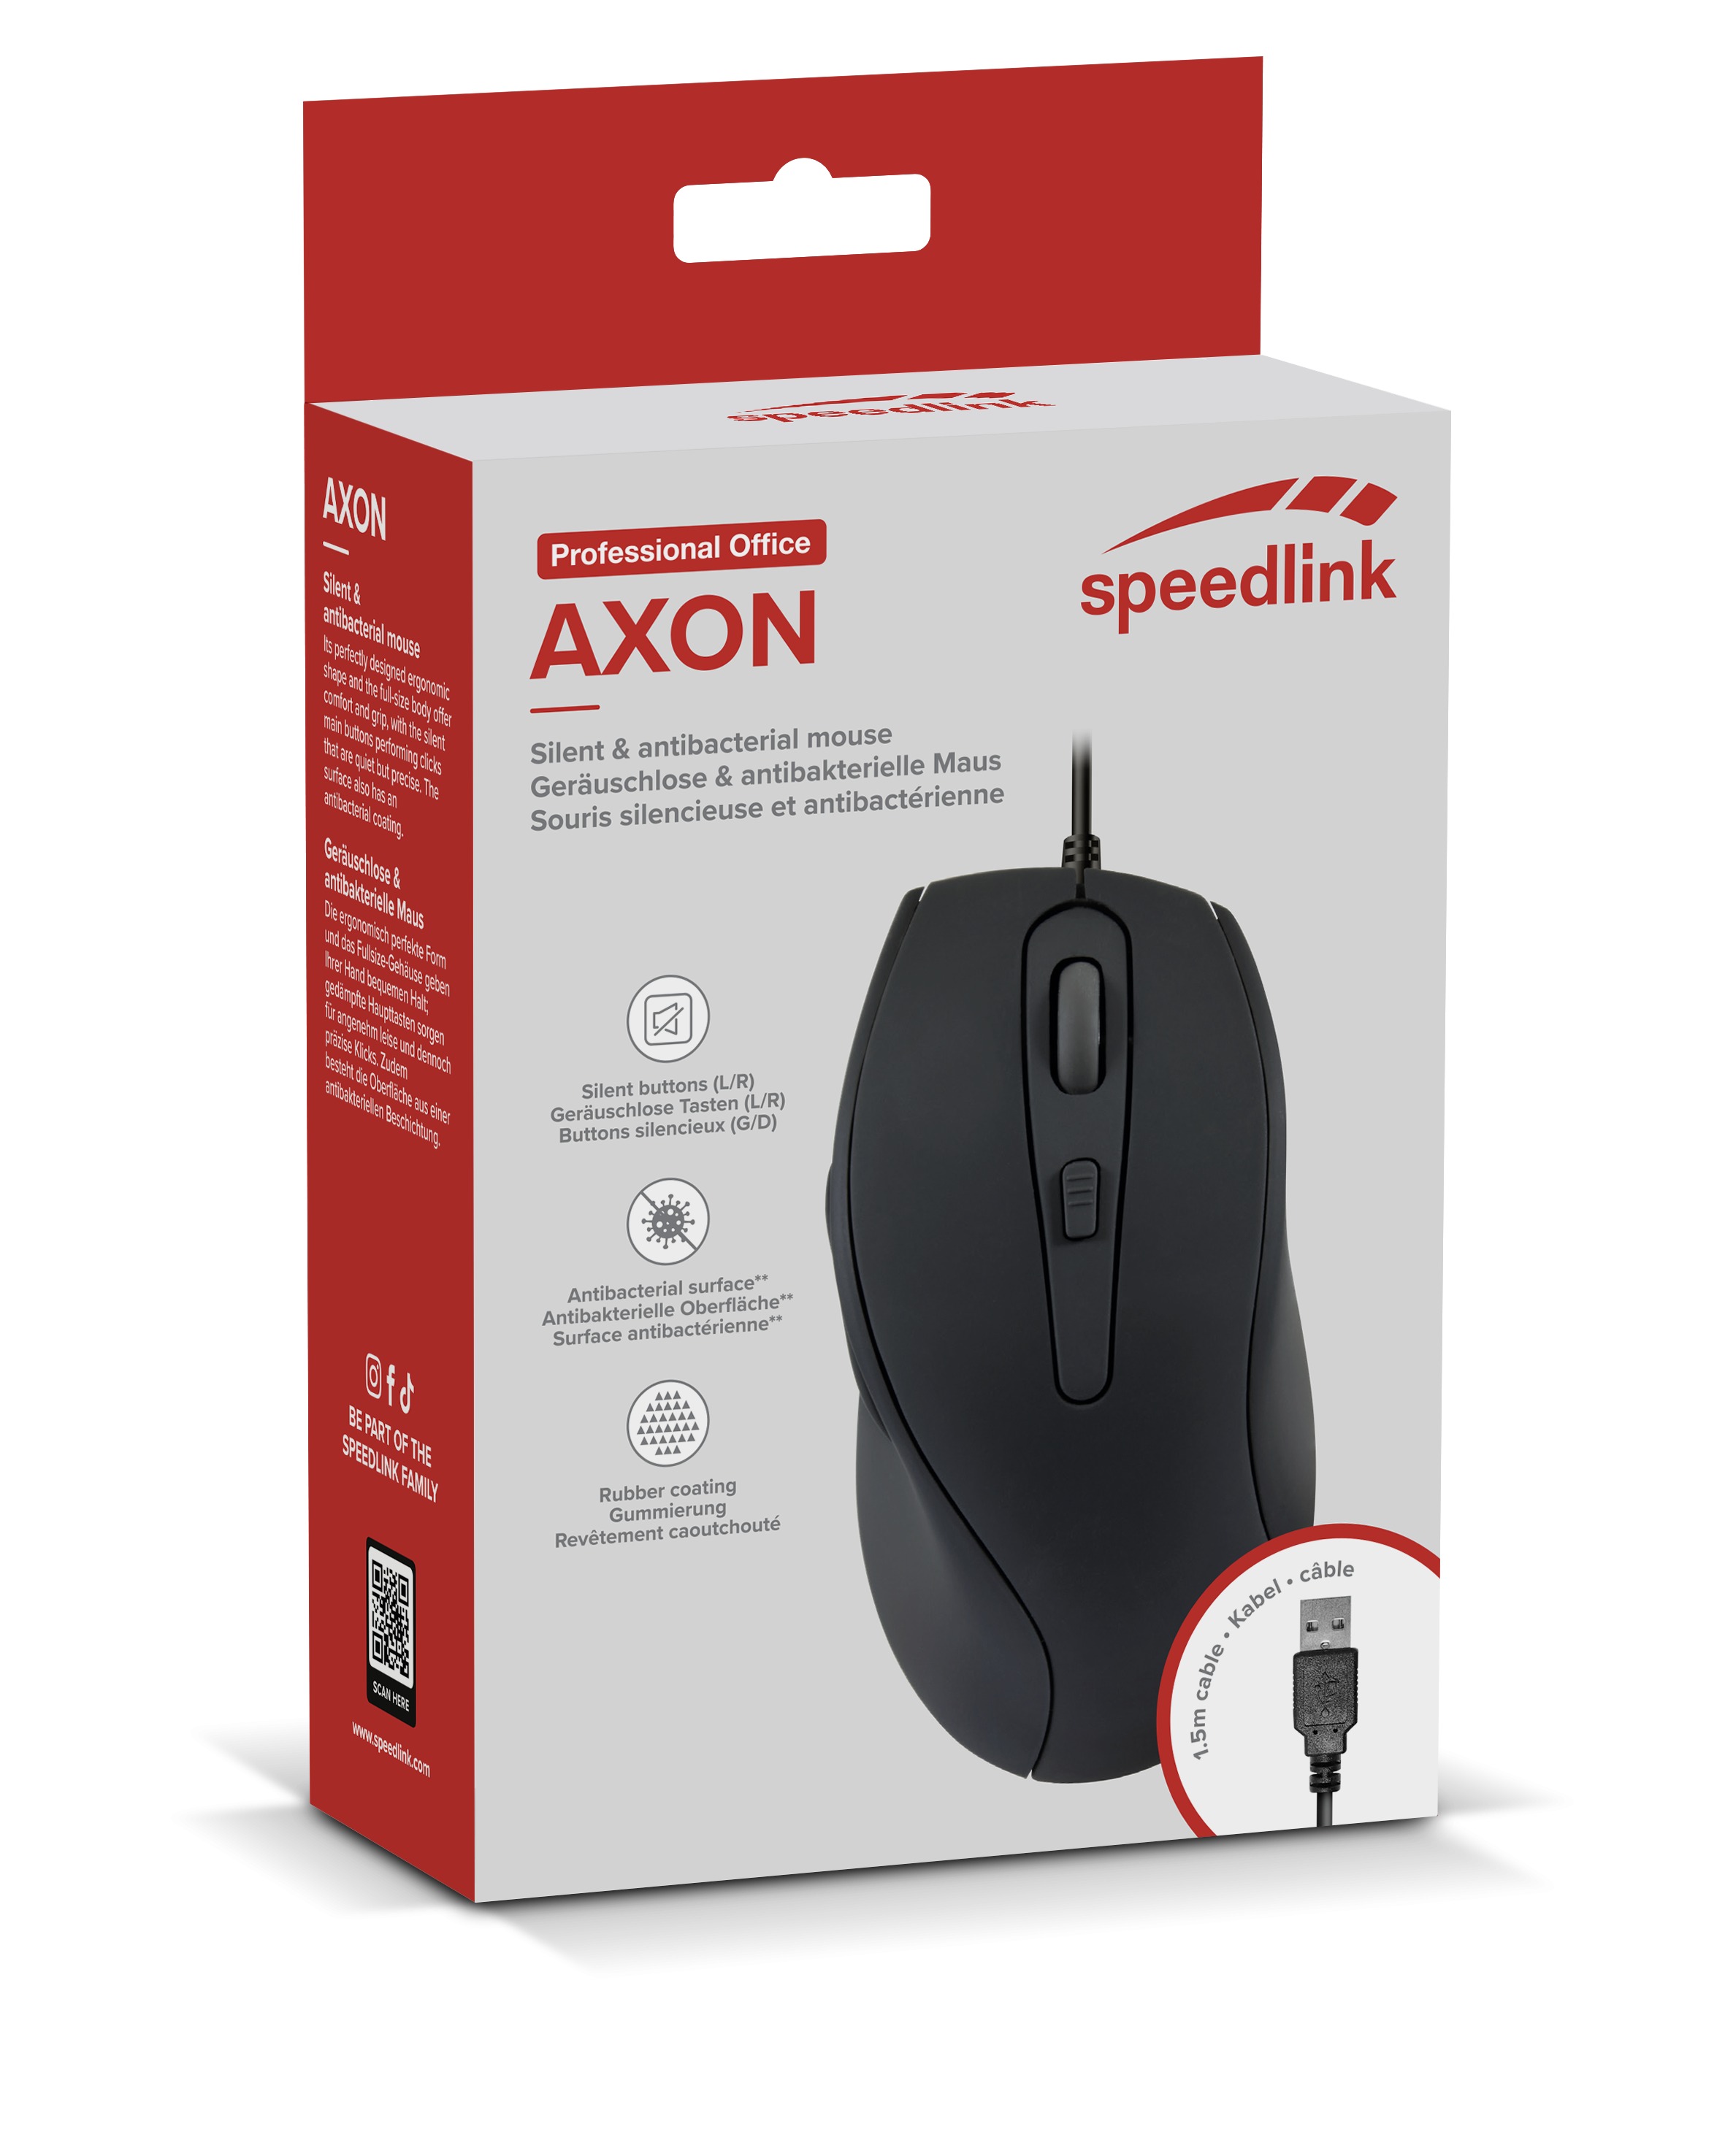 Speedlink Maus AXON, Leise & Antibakteriell, USB, schwarz retail - SL-610009-RRBK